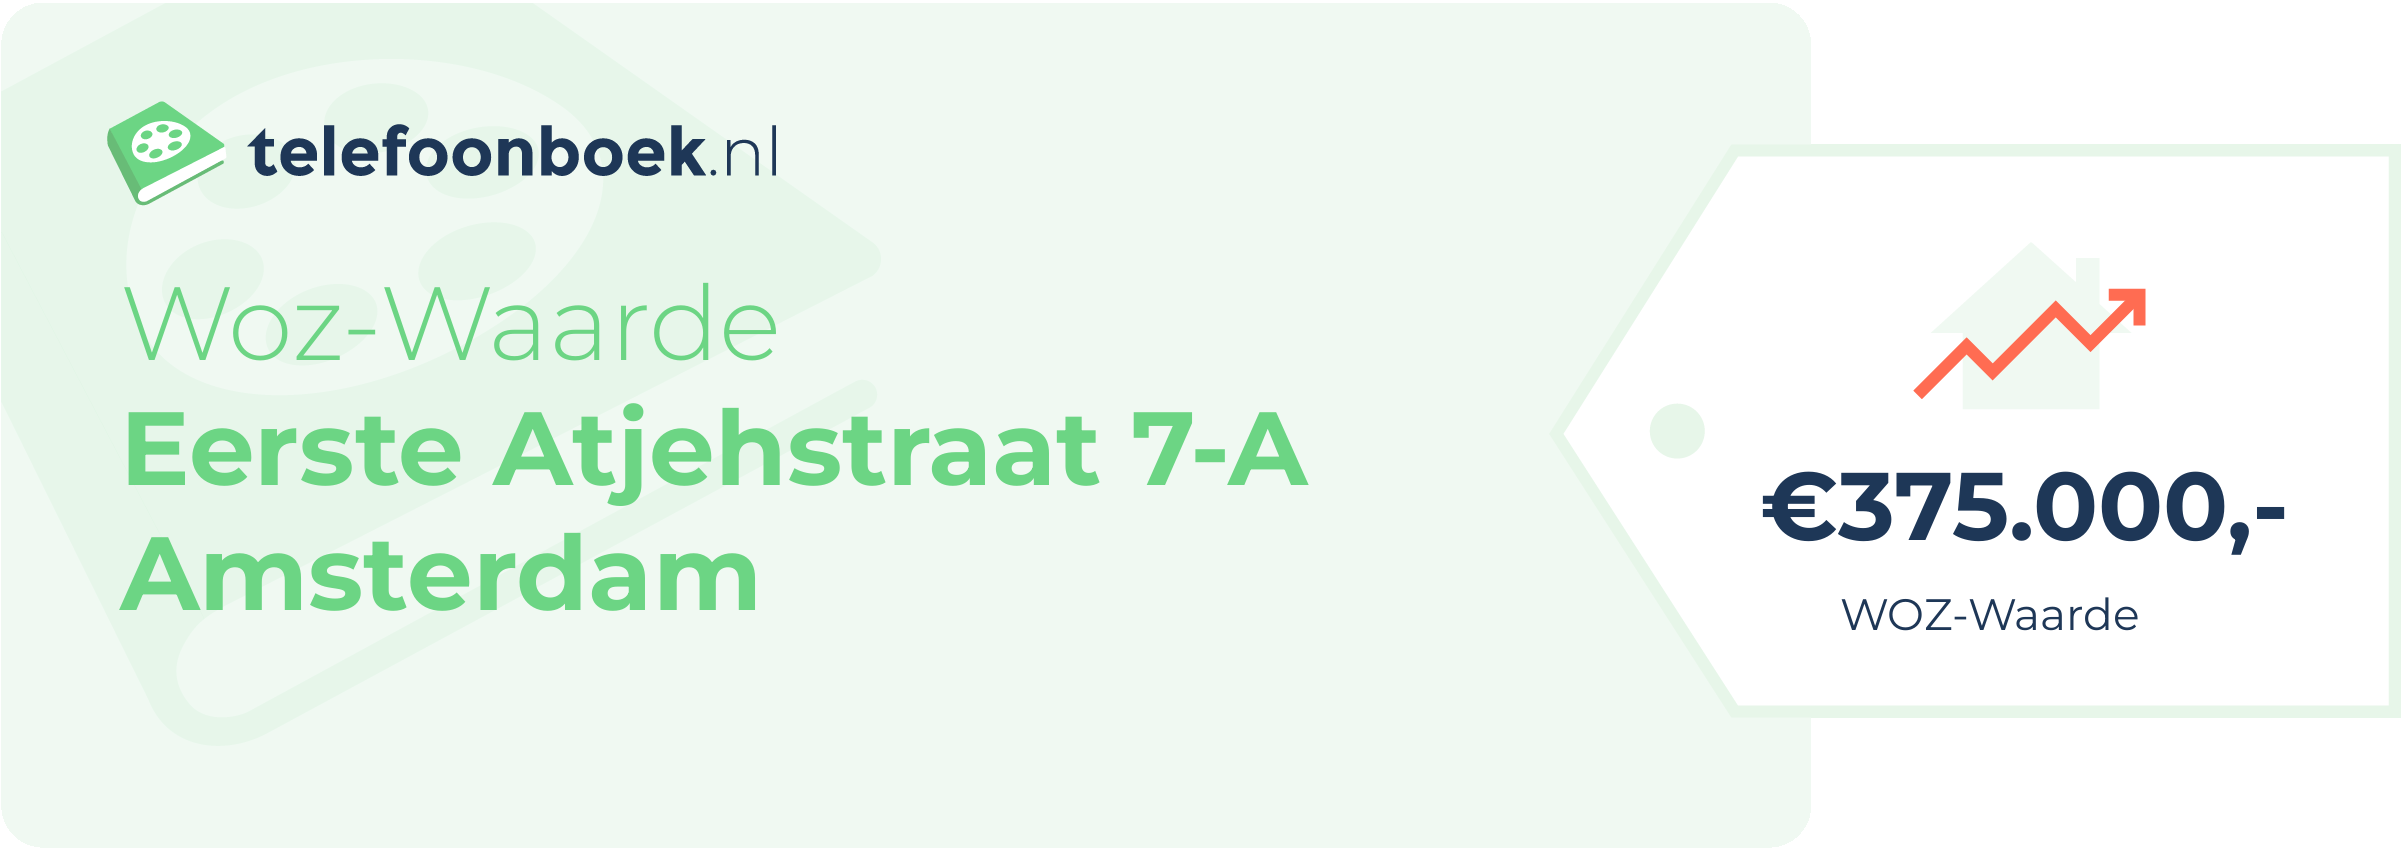 WOZ-waarde Eerste Atjehstraat 7-A Amsterdam